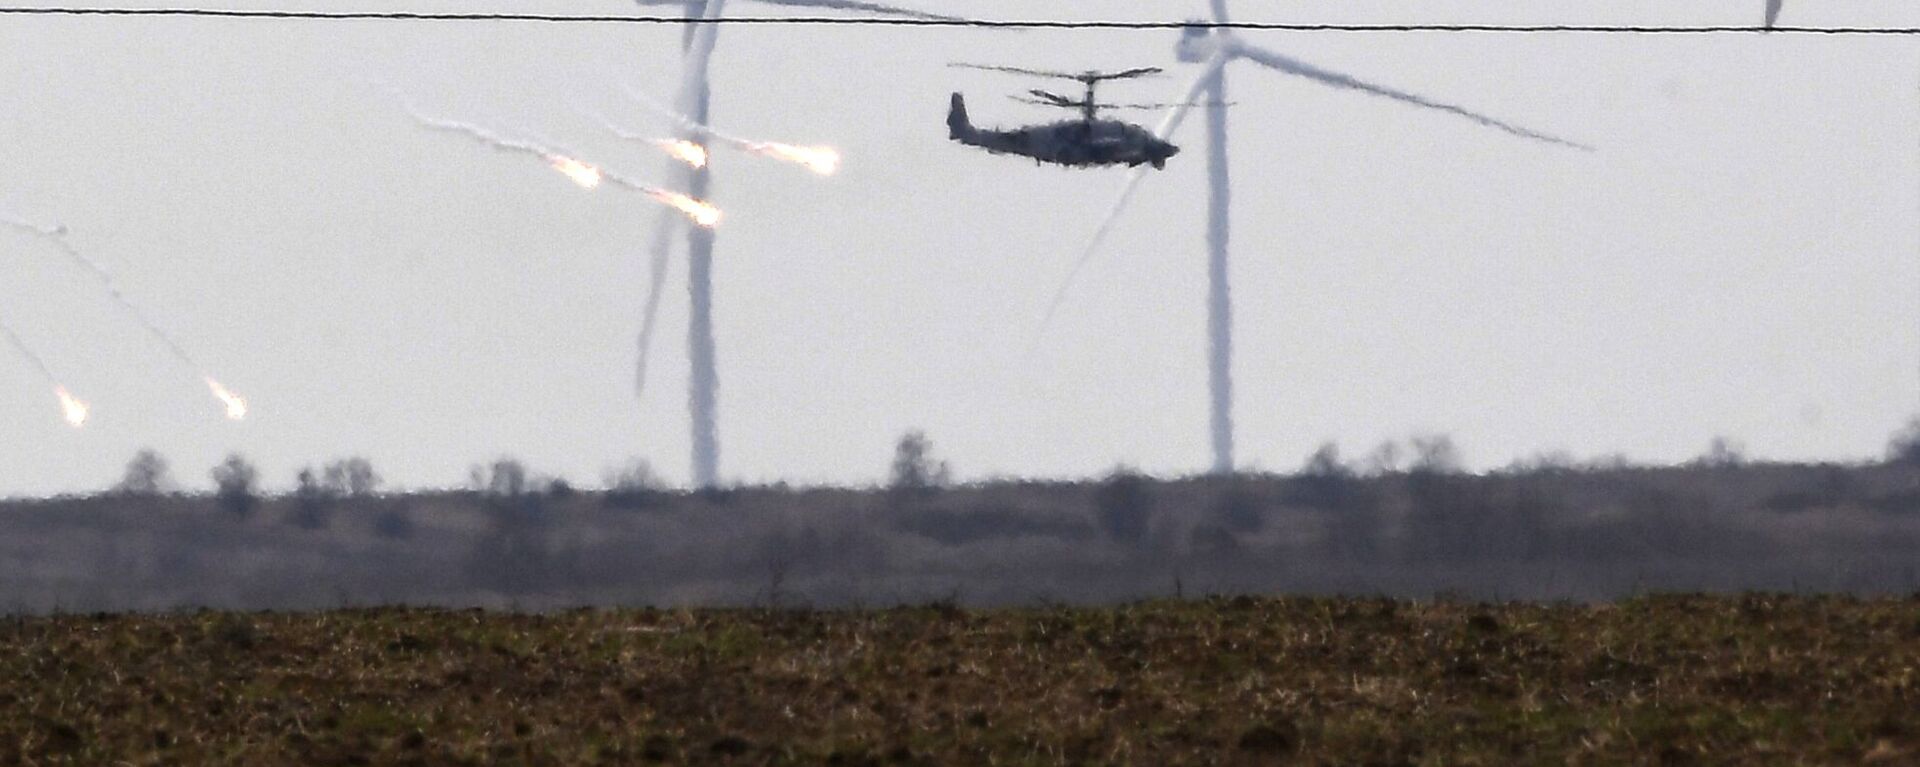 مروحيات هجومية من طراز مي-24 تابعة للقوات الجوية الروسية تحلق في سماء أرمينيا 28 فبراير 2022 - سبوتنيك عربي, 1920, 04.11.2022